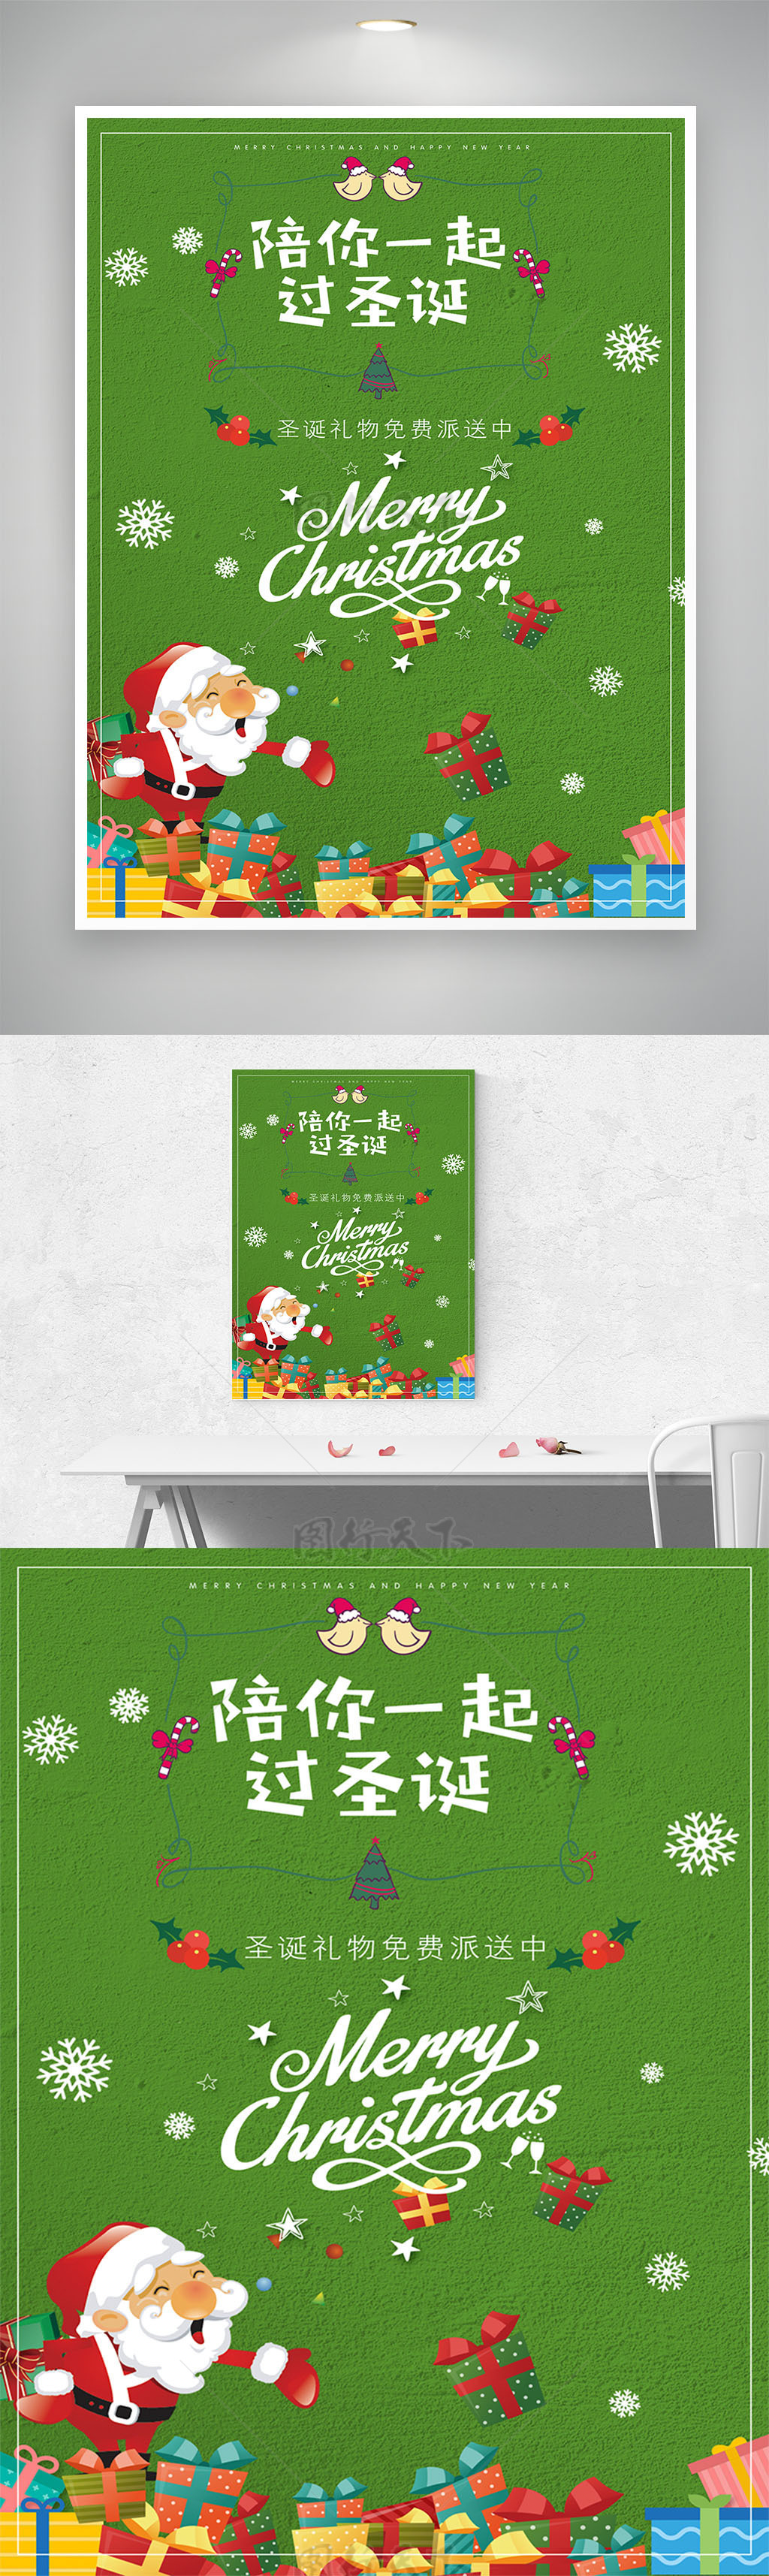 陪你一起过圣诞绿色卡通扁平化圣诞节海报